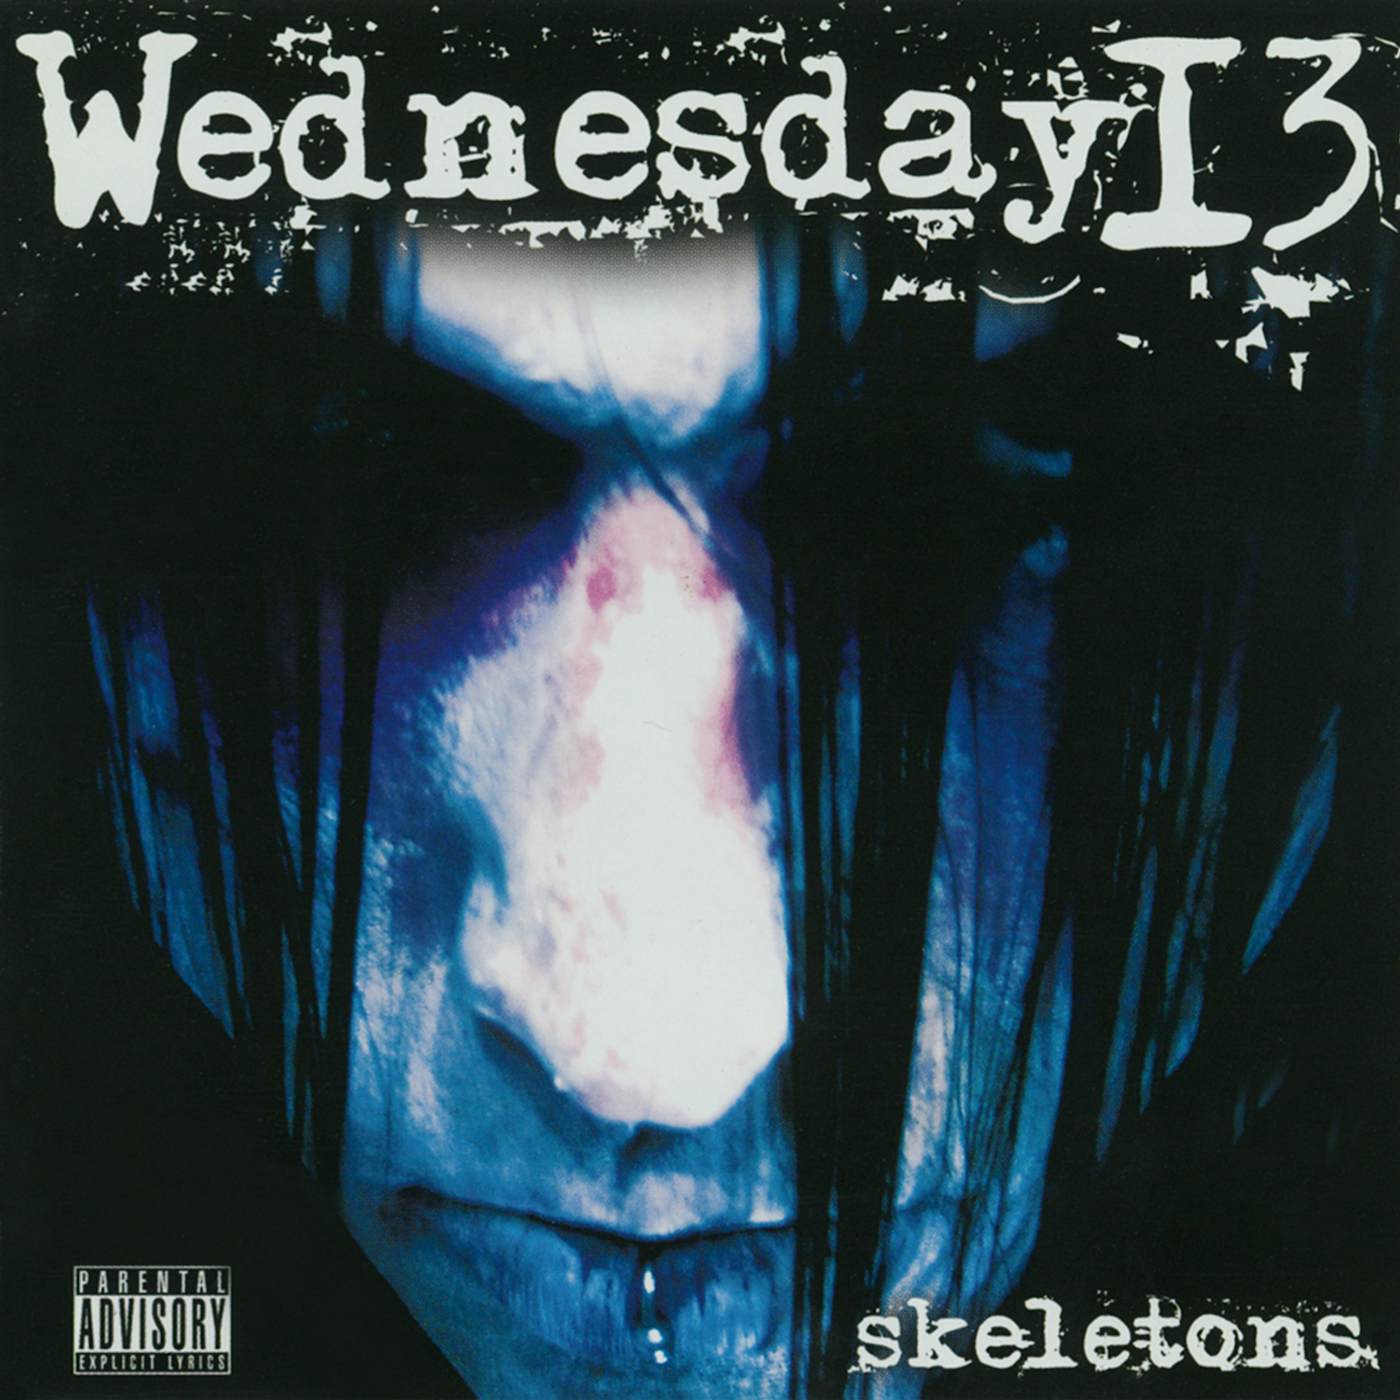 Wednesday 13 SKELETONS CD